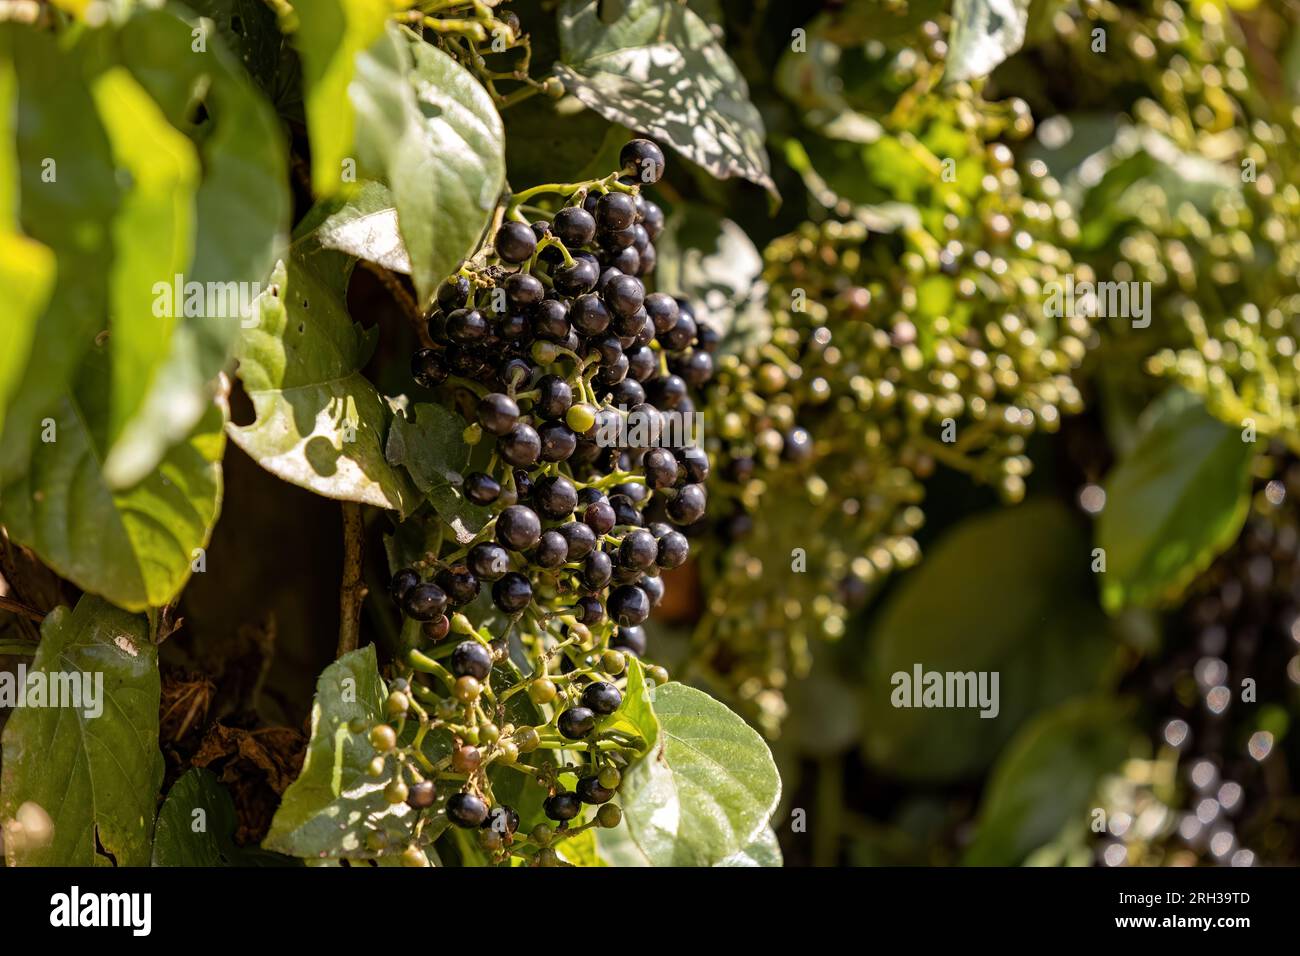 Possum Grape Fruiting Plant of the species Cissus verticillata Stock Photo